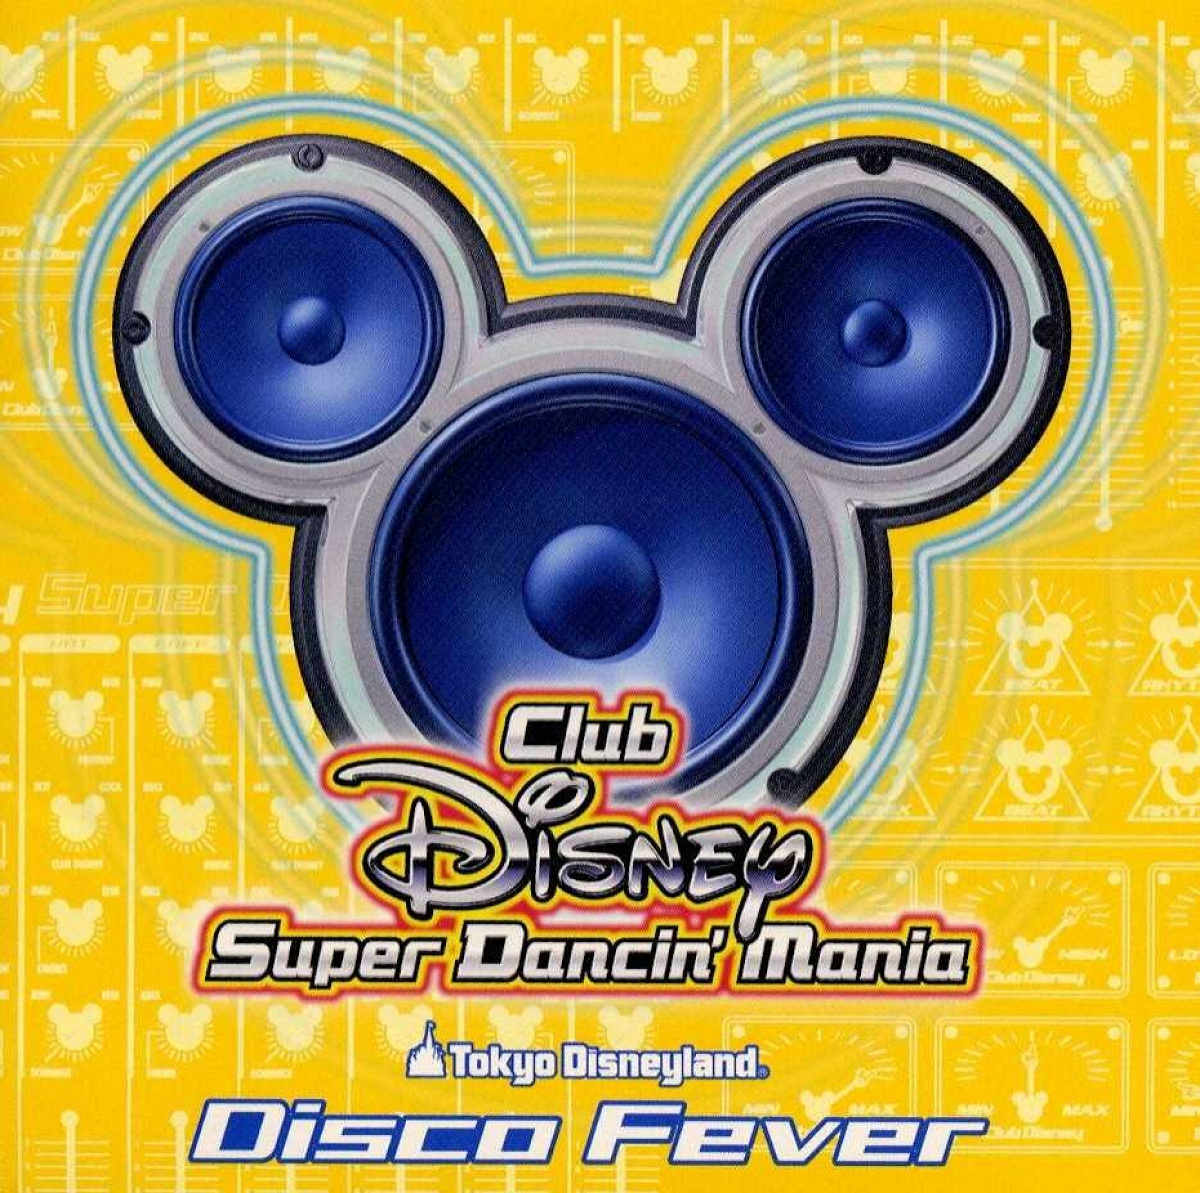 「Club Disneyスーパーダンシン・マニア」2stステージ曲は「ディスコ・フィーバー」